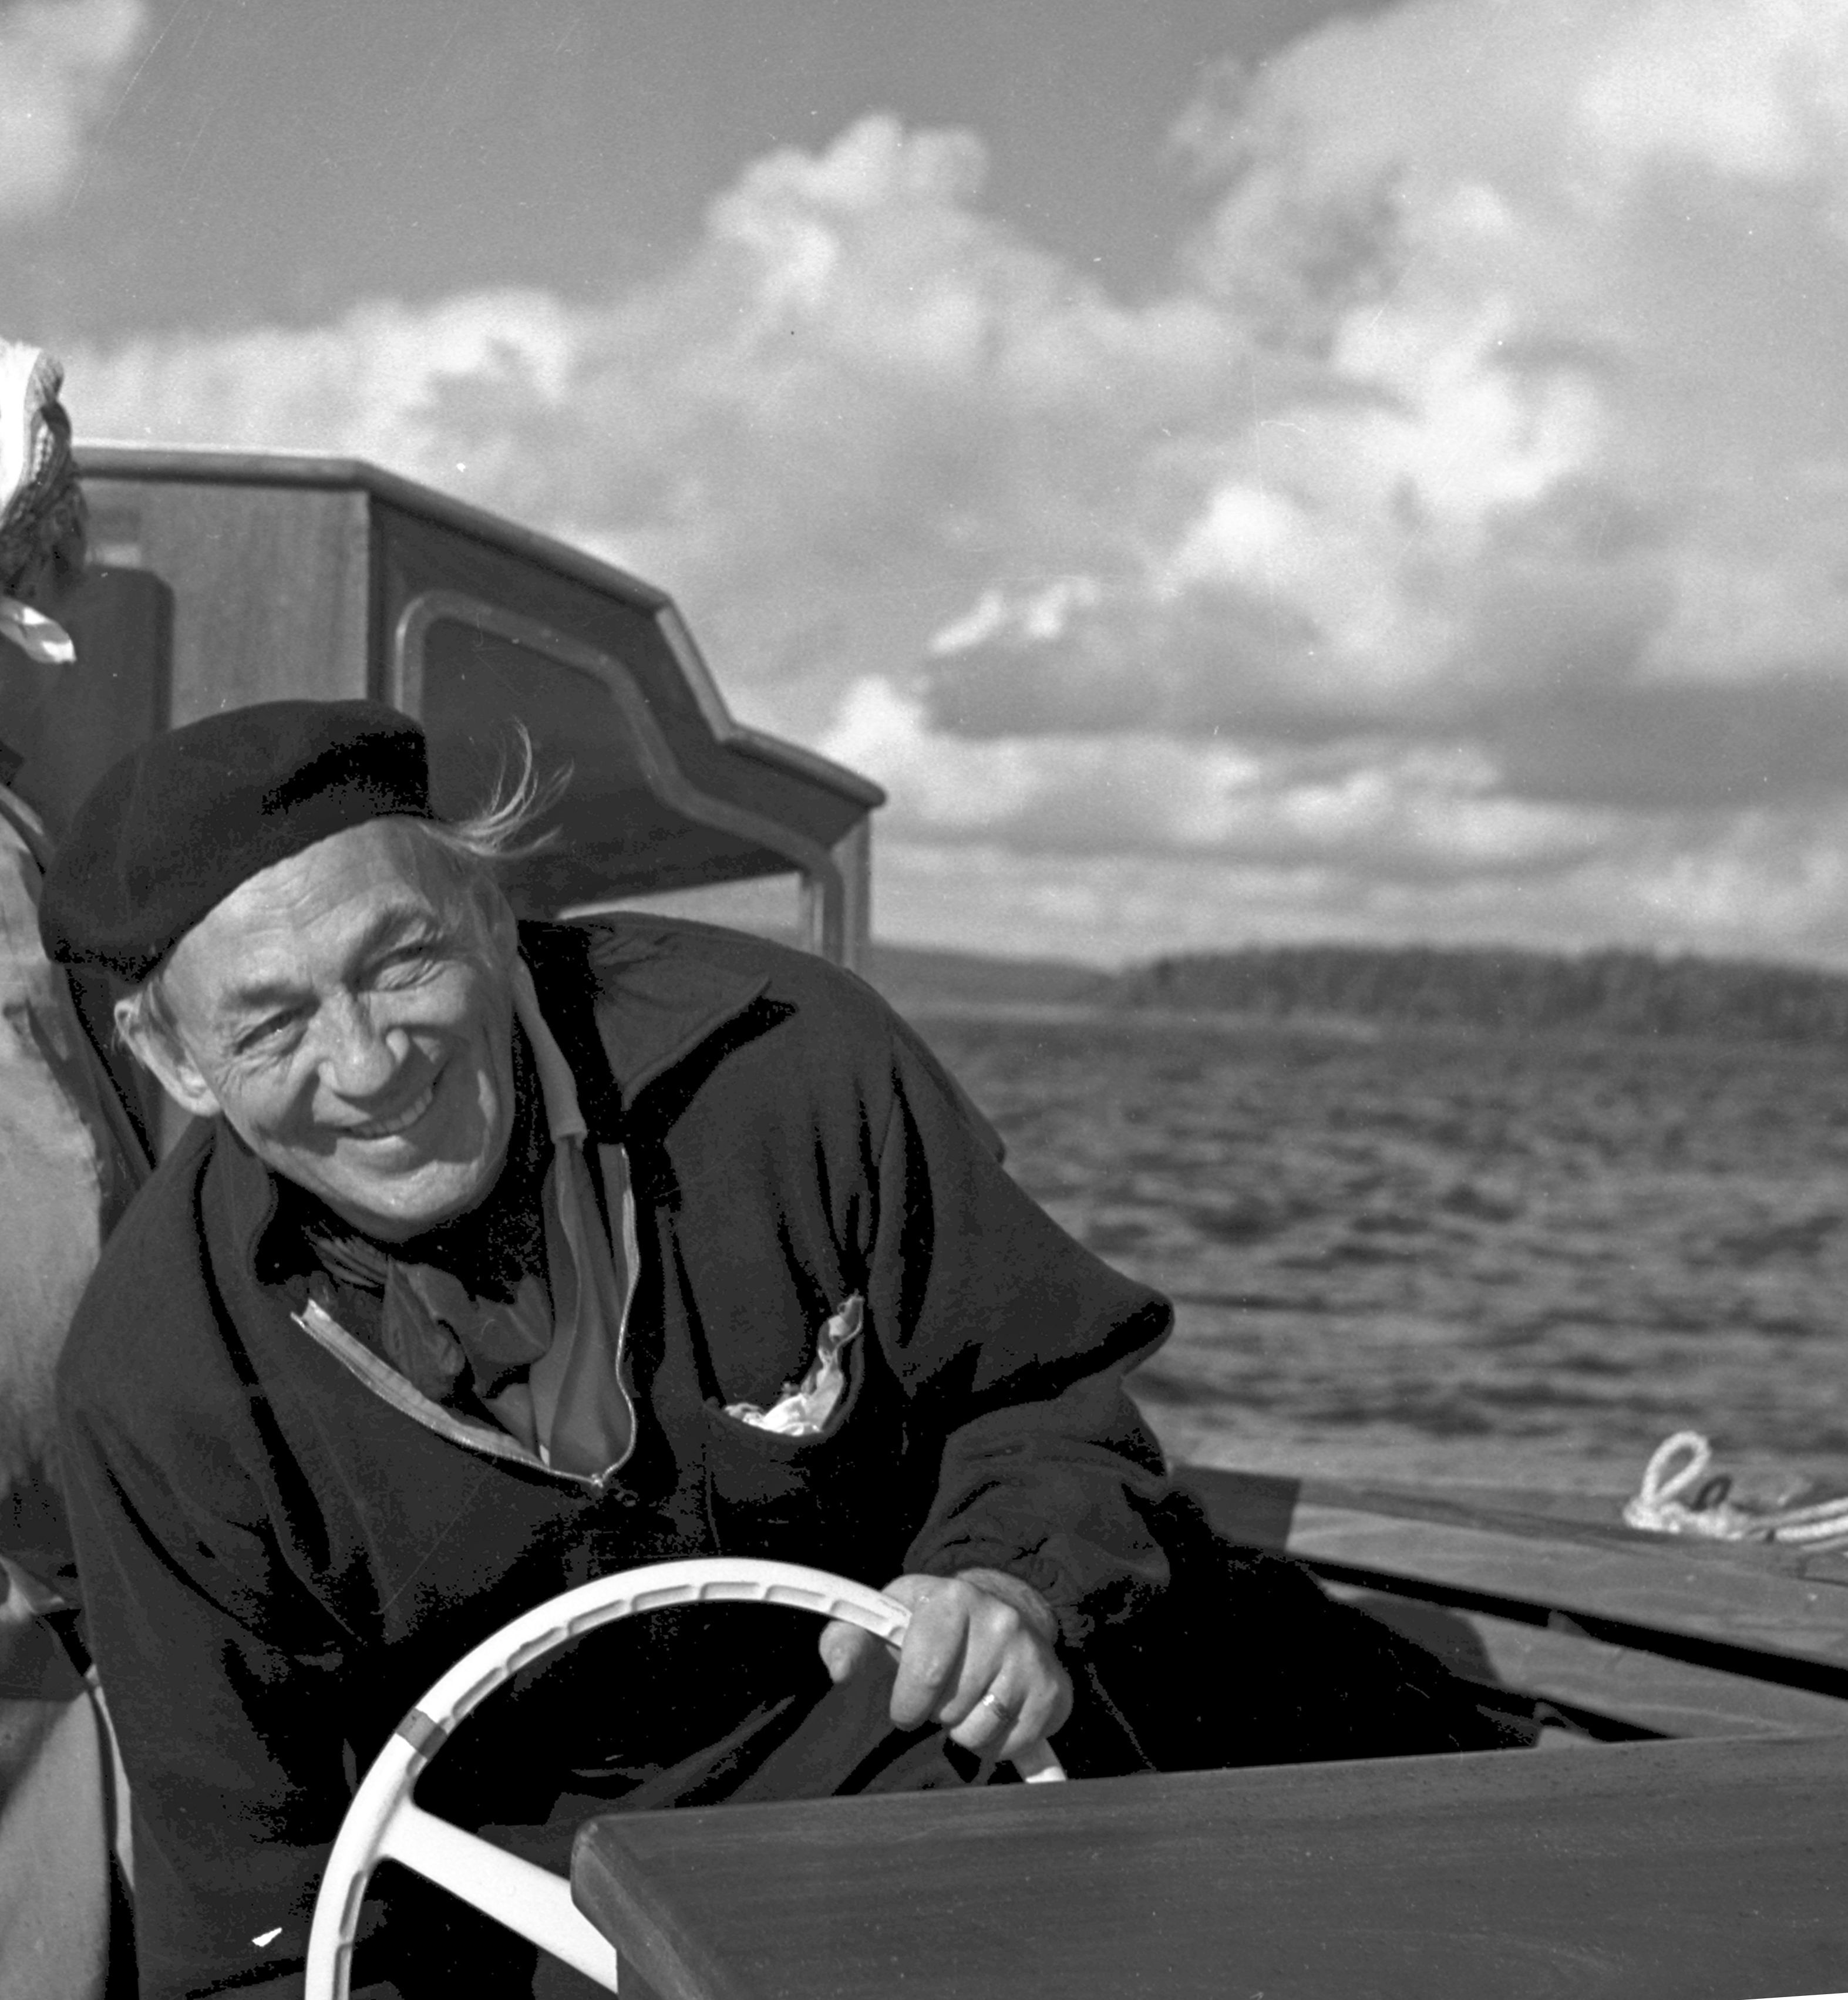 ネモ・プロフェタ号に乗るアアルト、1960年代　(C)Schildt Foundation, photo: Göran Schildt